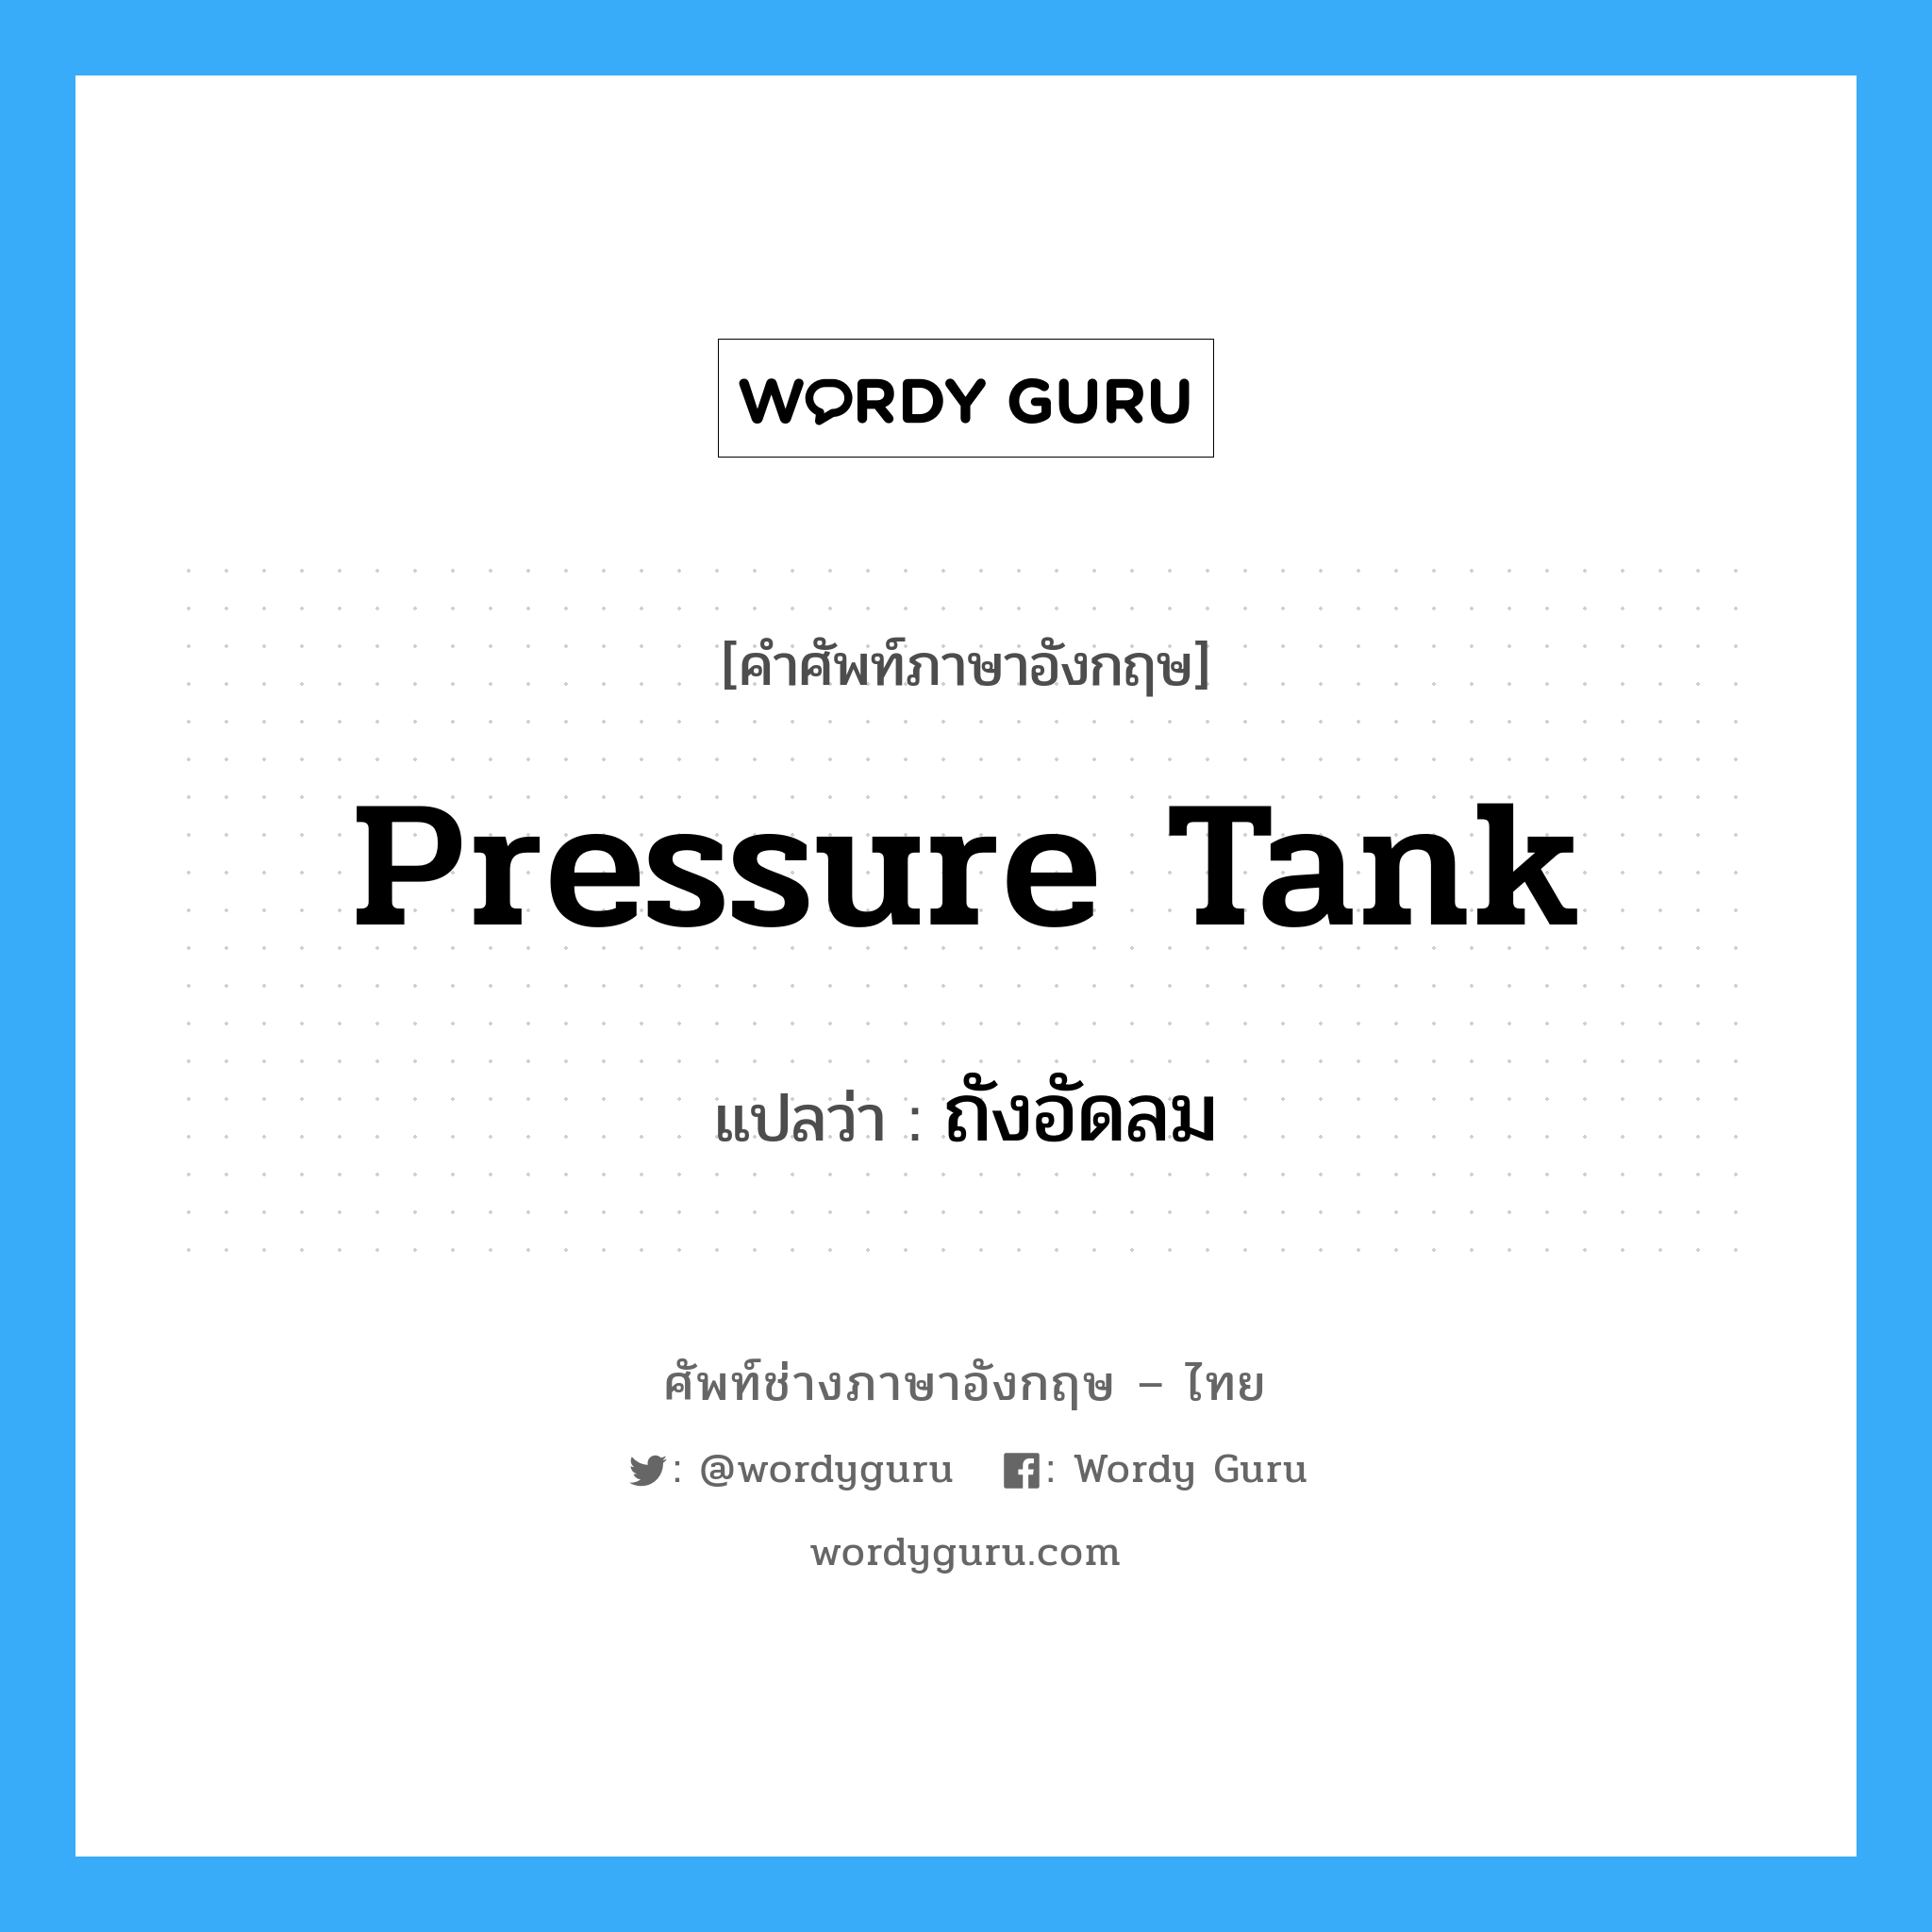 ถังอัดลม ภาษาอังกฤษ?, คำศัพท์ช่างภาษาอังกฤษ - ไทย ถังอัดลม คำศัพท์ภาษาอังกฤษ ถังอัดลม แปลว่า pressure tank